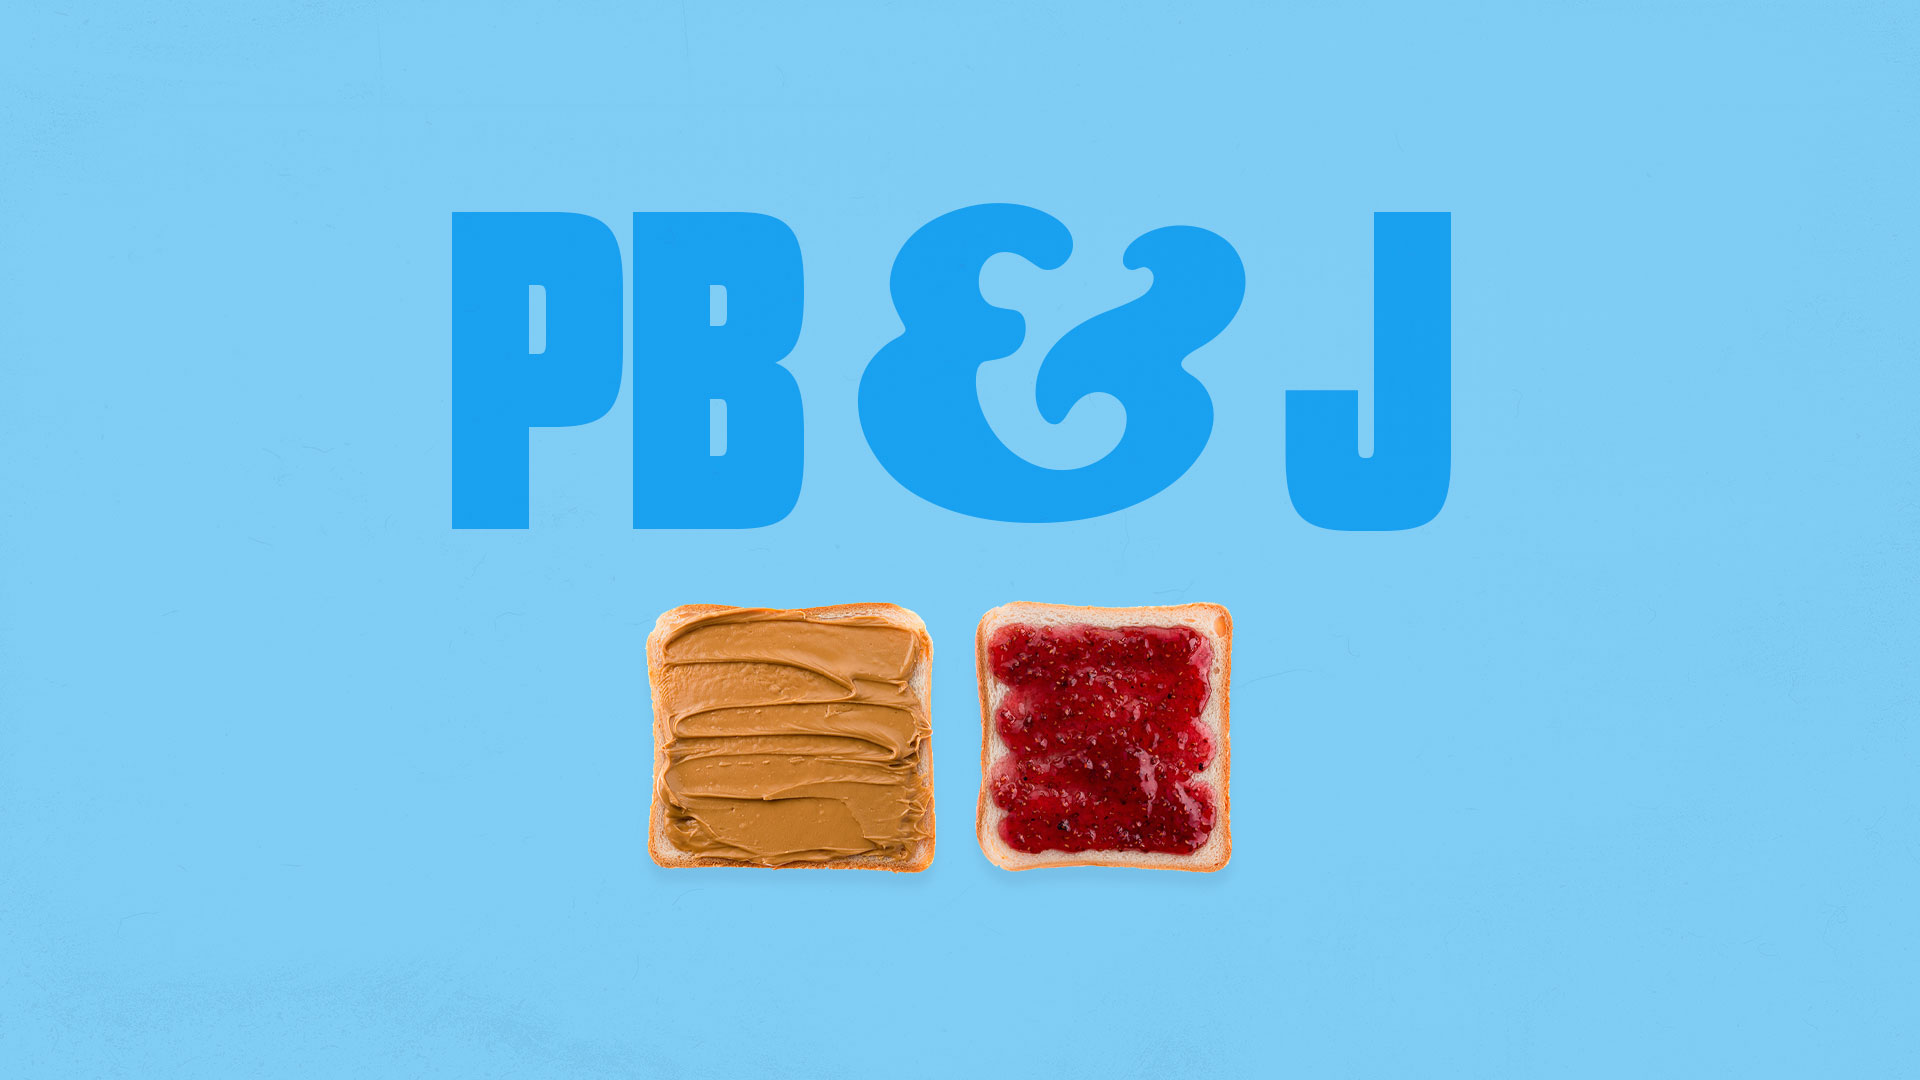 PB&J